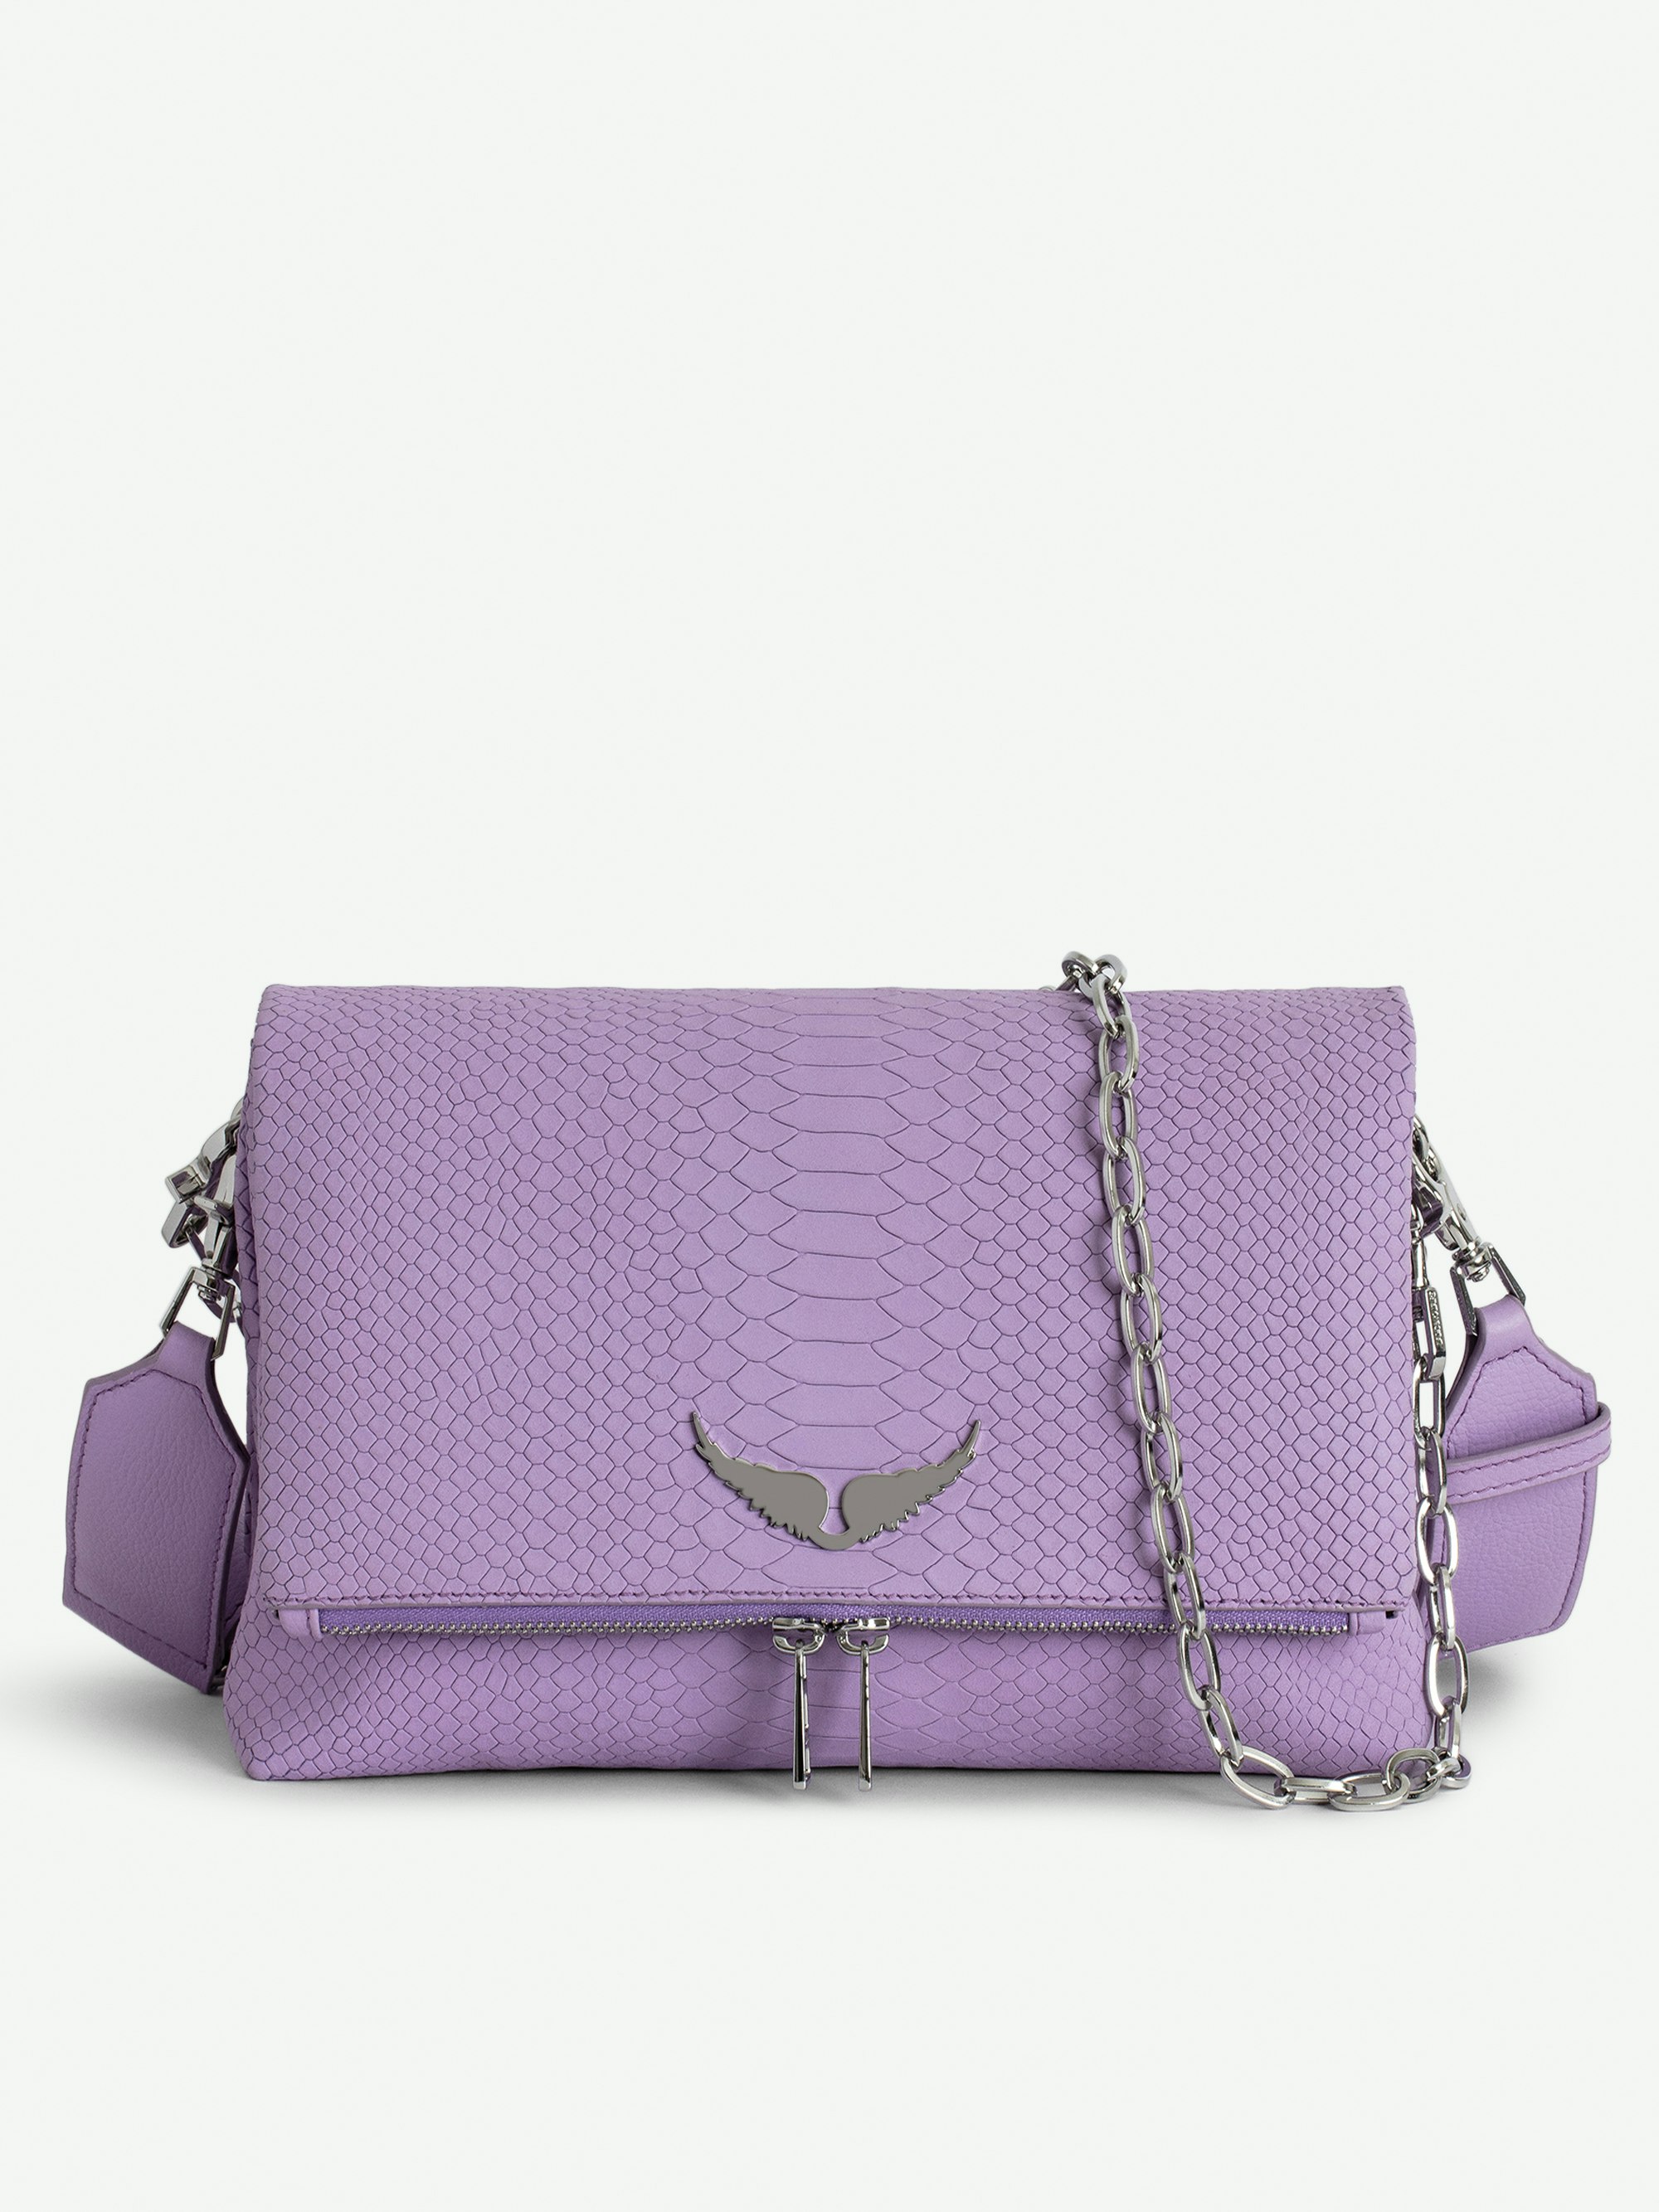 Tasche Rocky Soft Savage - Violette Handtasche aus Leder in Python-Optik mit Schulterriemen, Kette und Flügel-Charm.